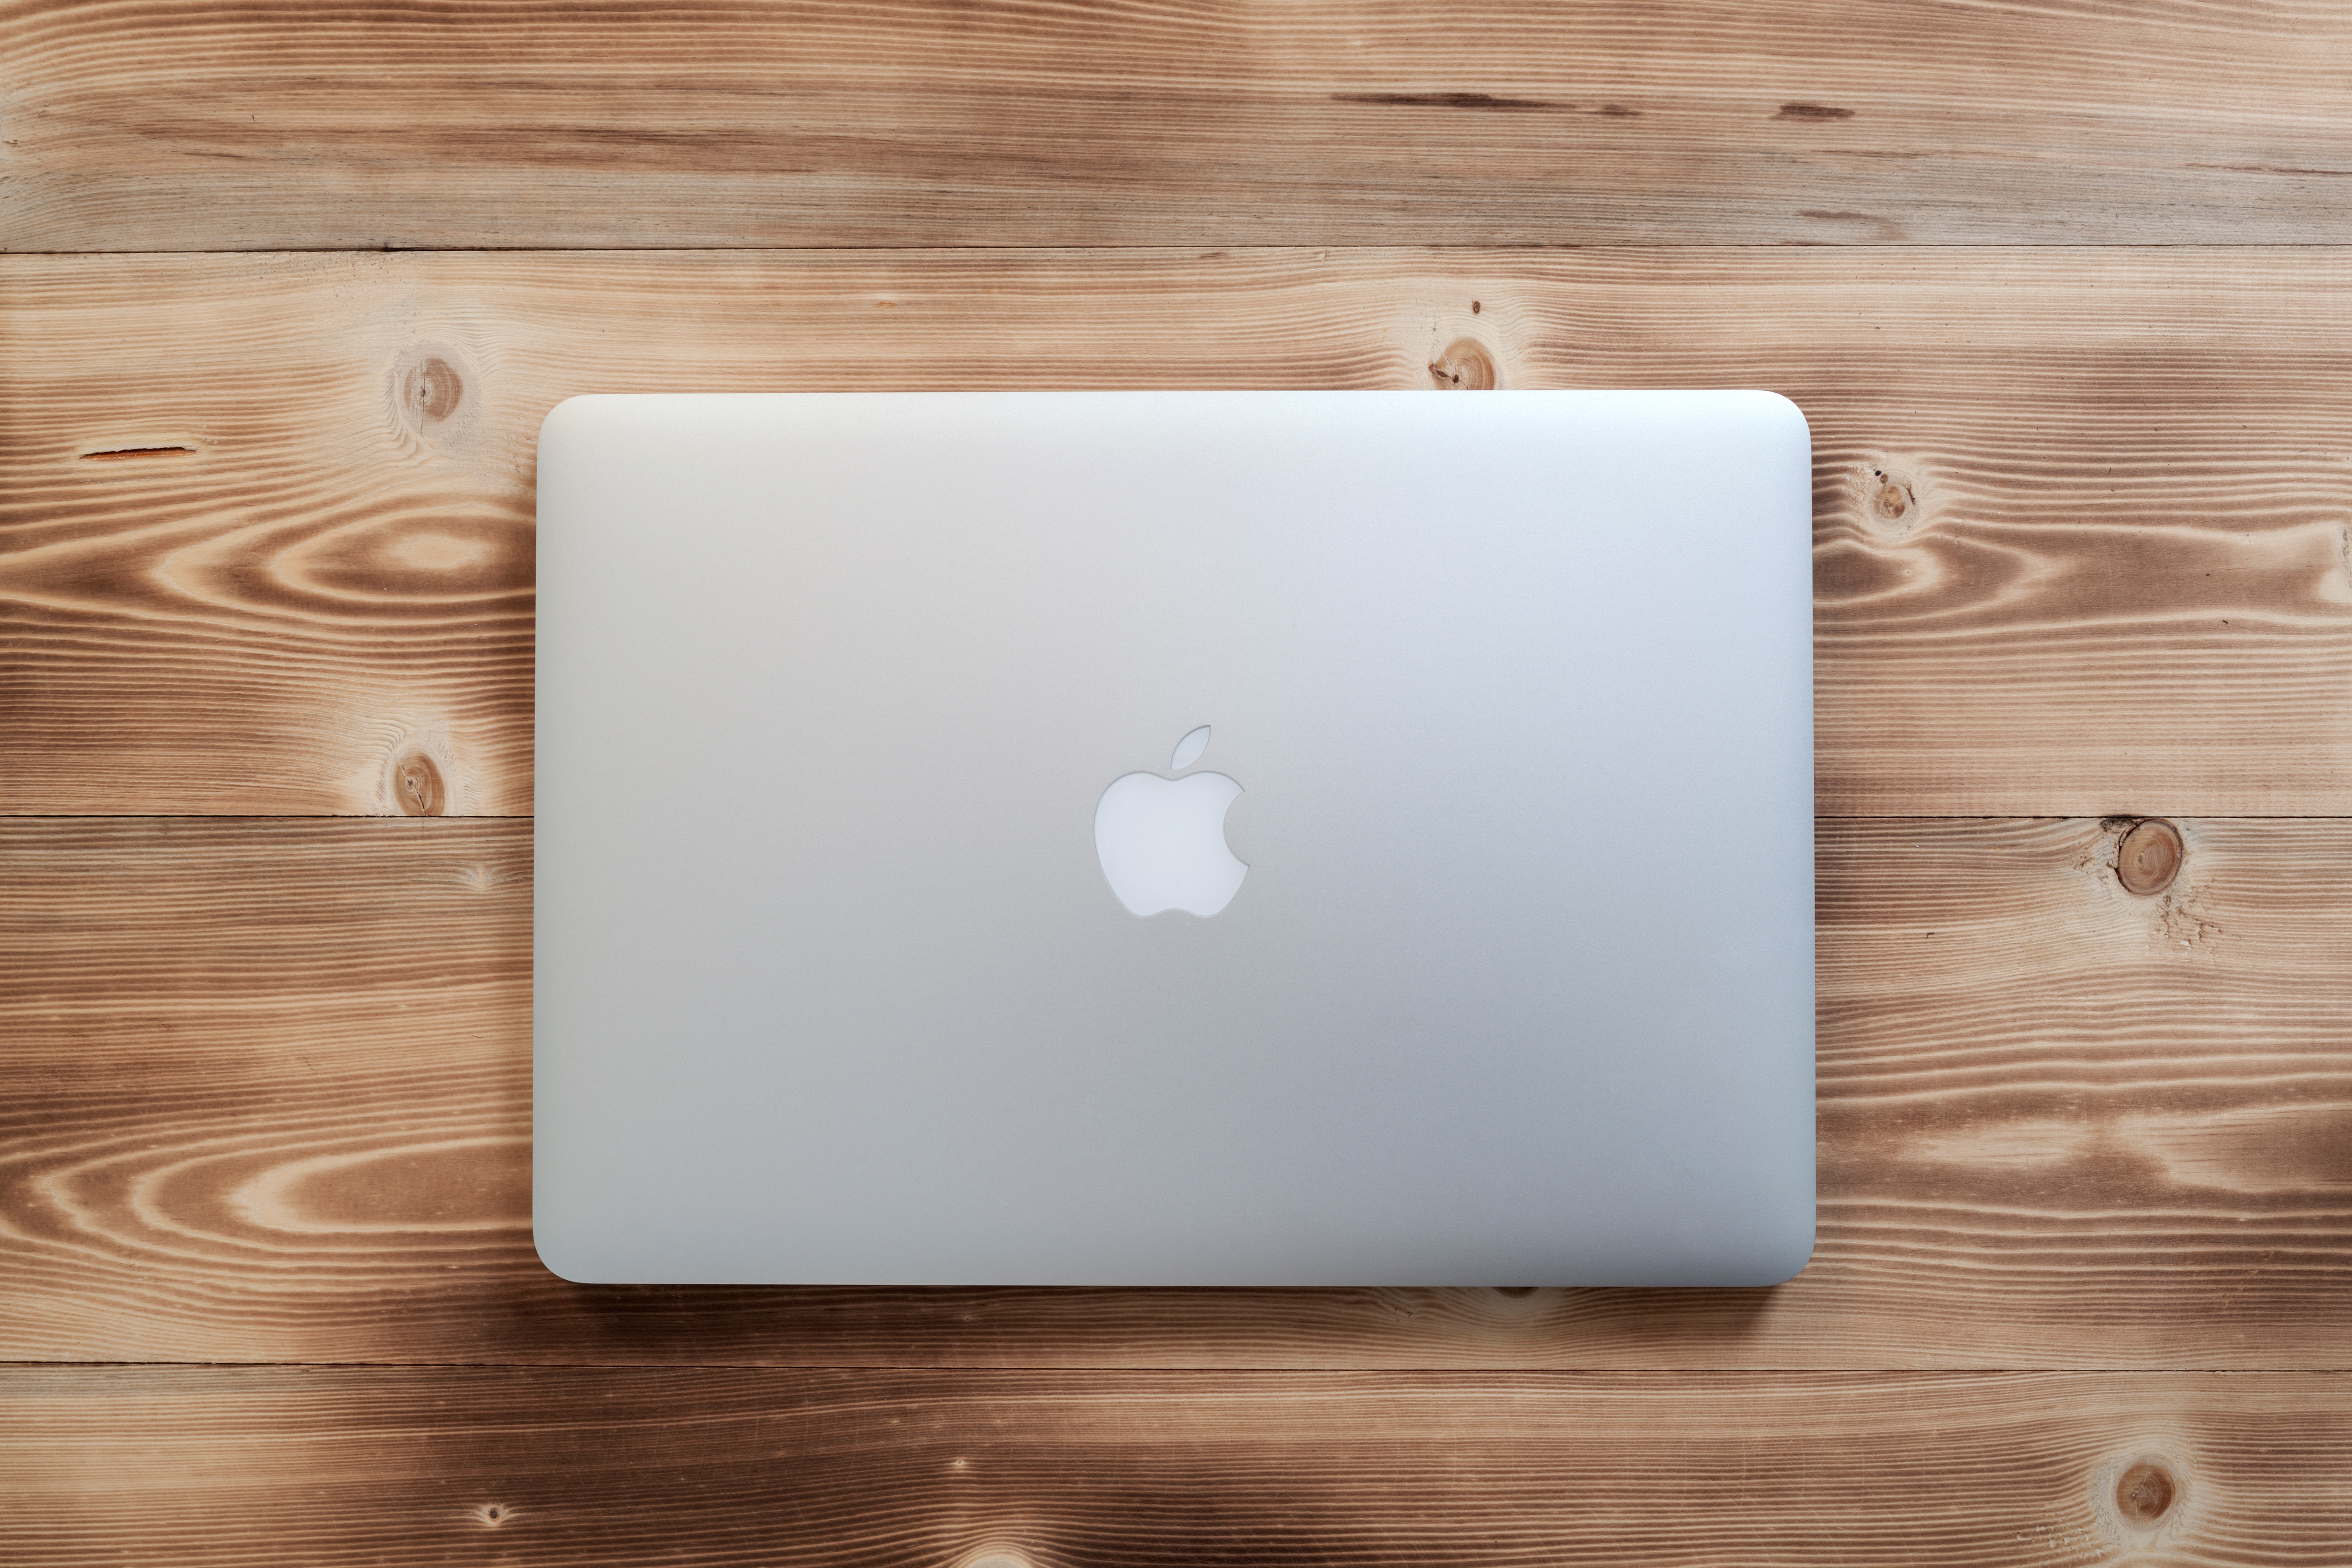   Macbook Pro Laptops sind unter Appleist am teuersten